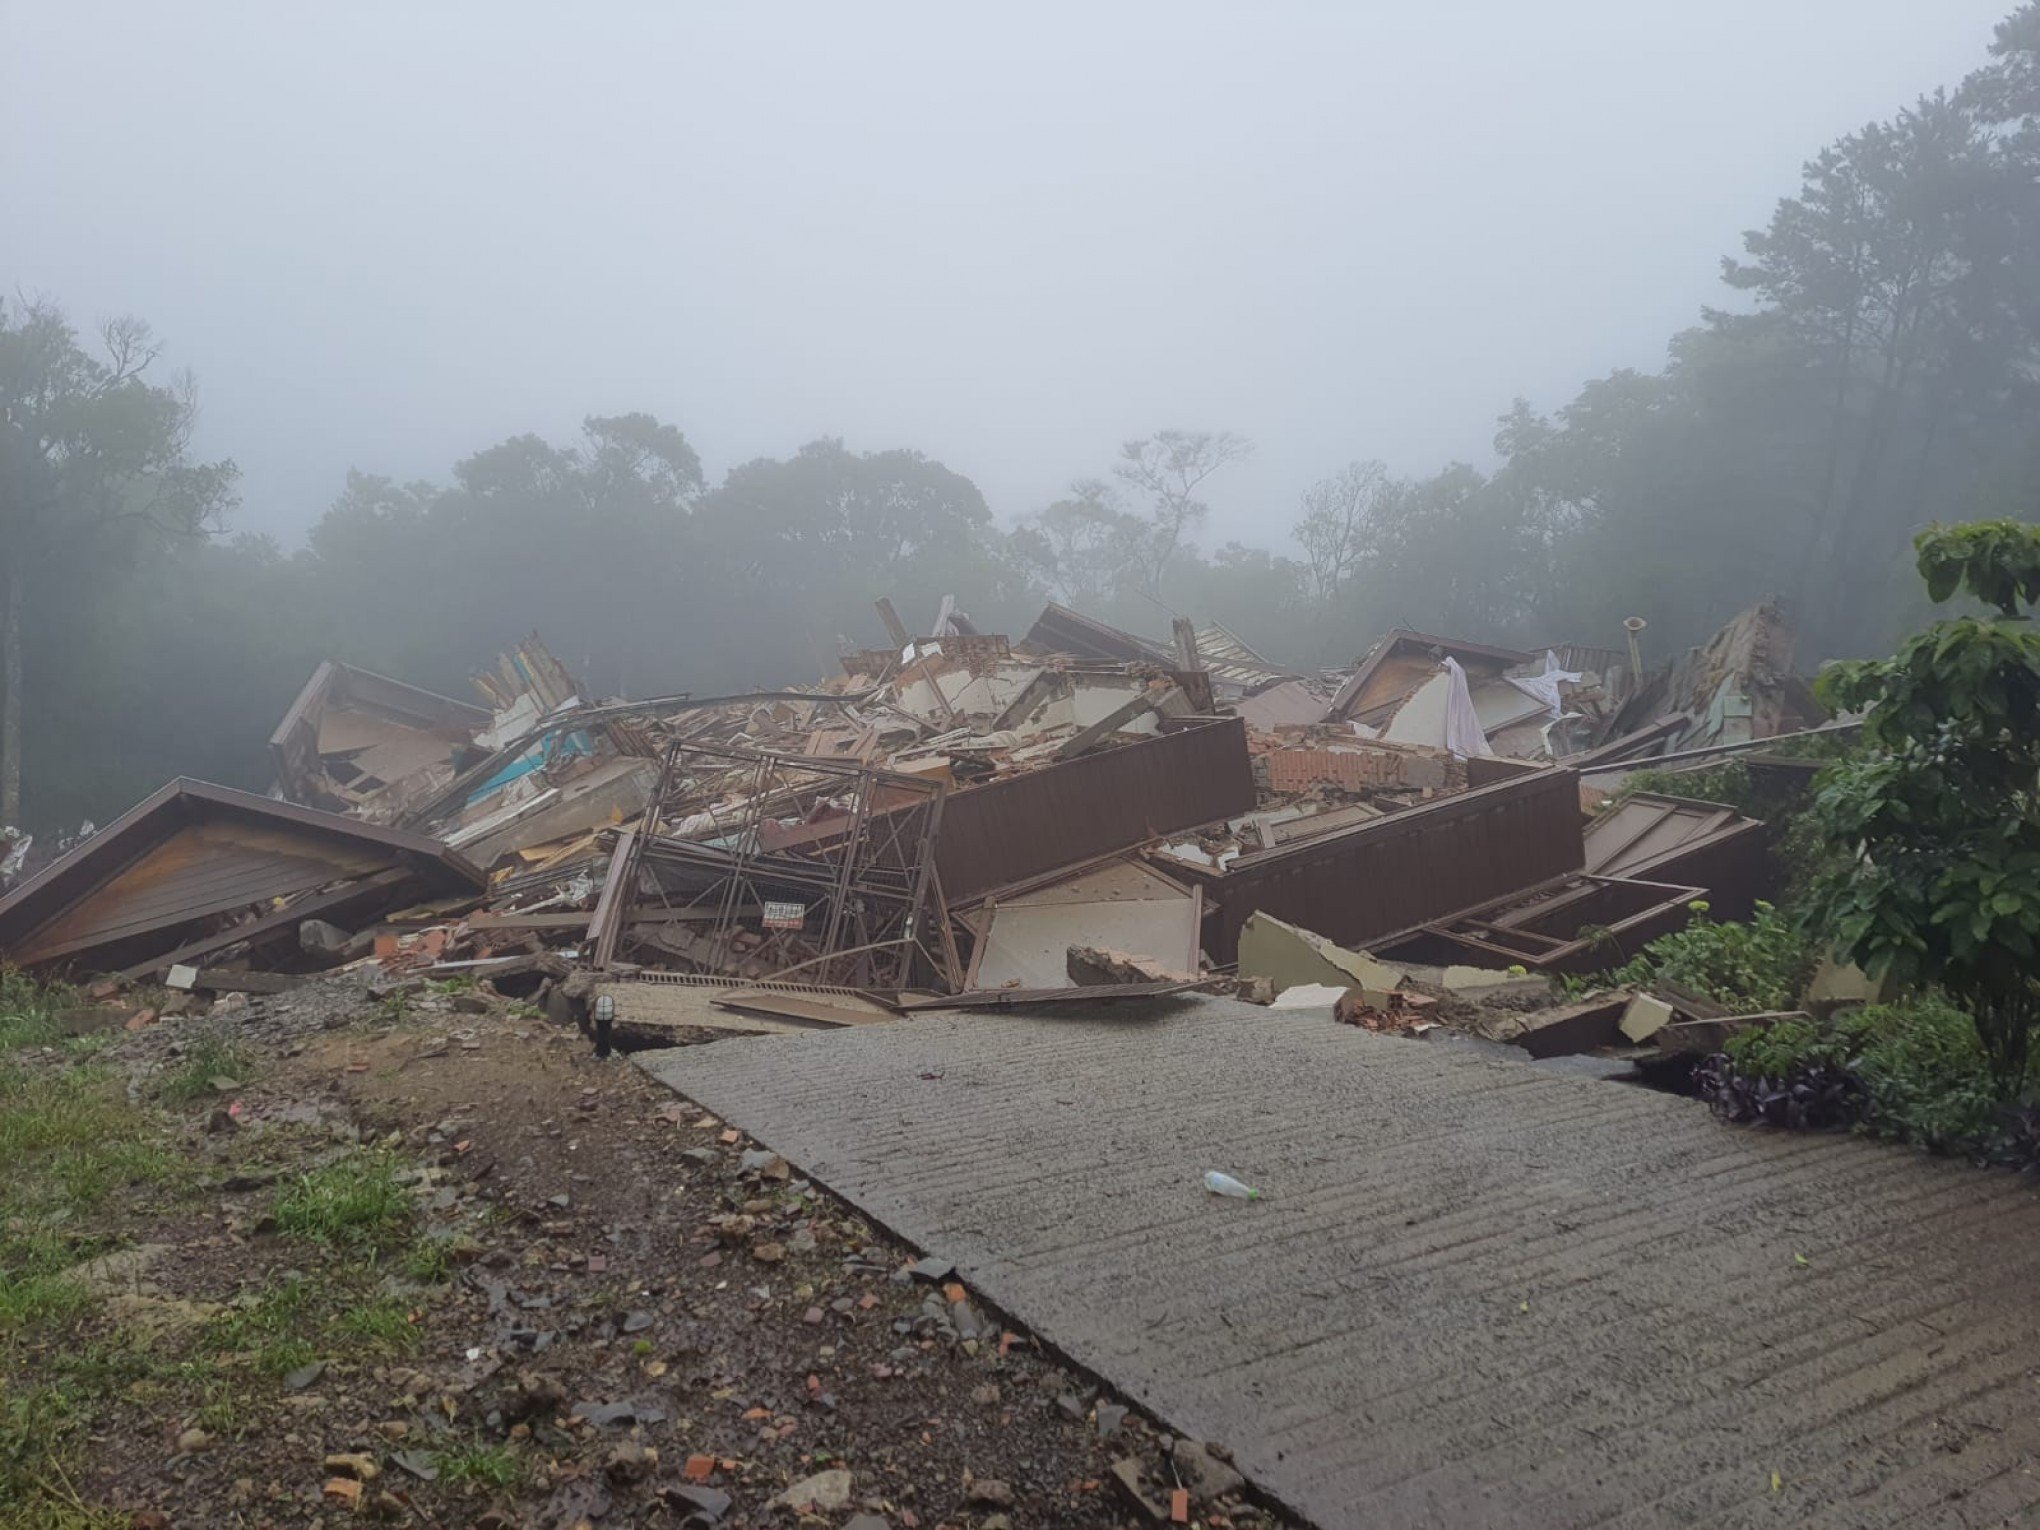 GRAMADO: "Não tenho nada a declarar", diz síndico de prédio que desabou na Serra gaúcha